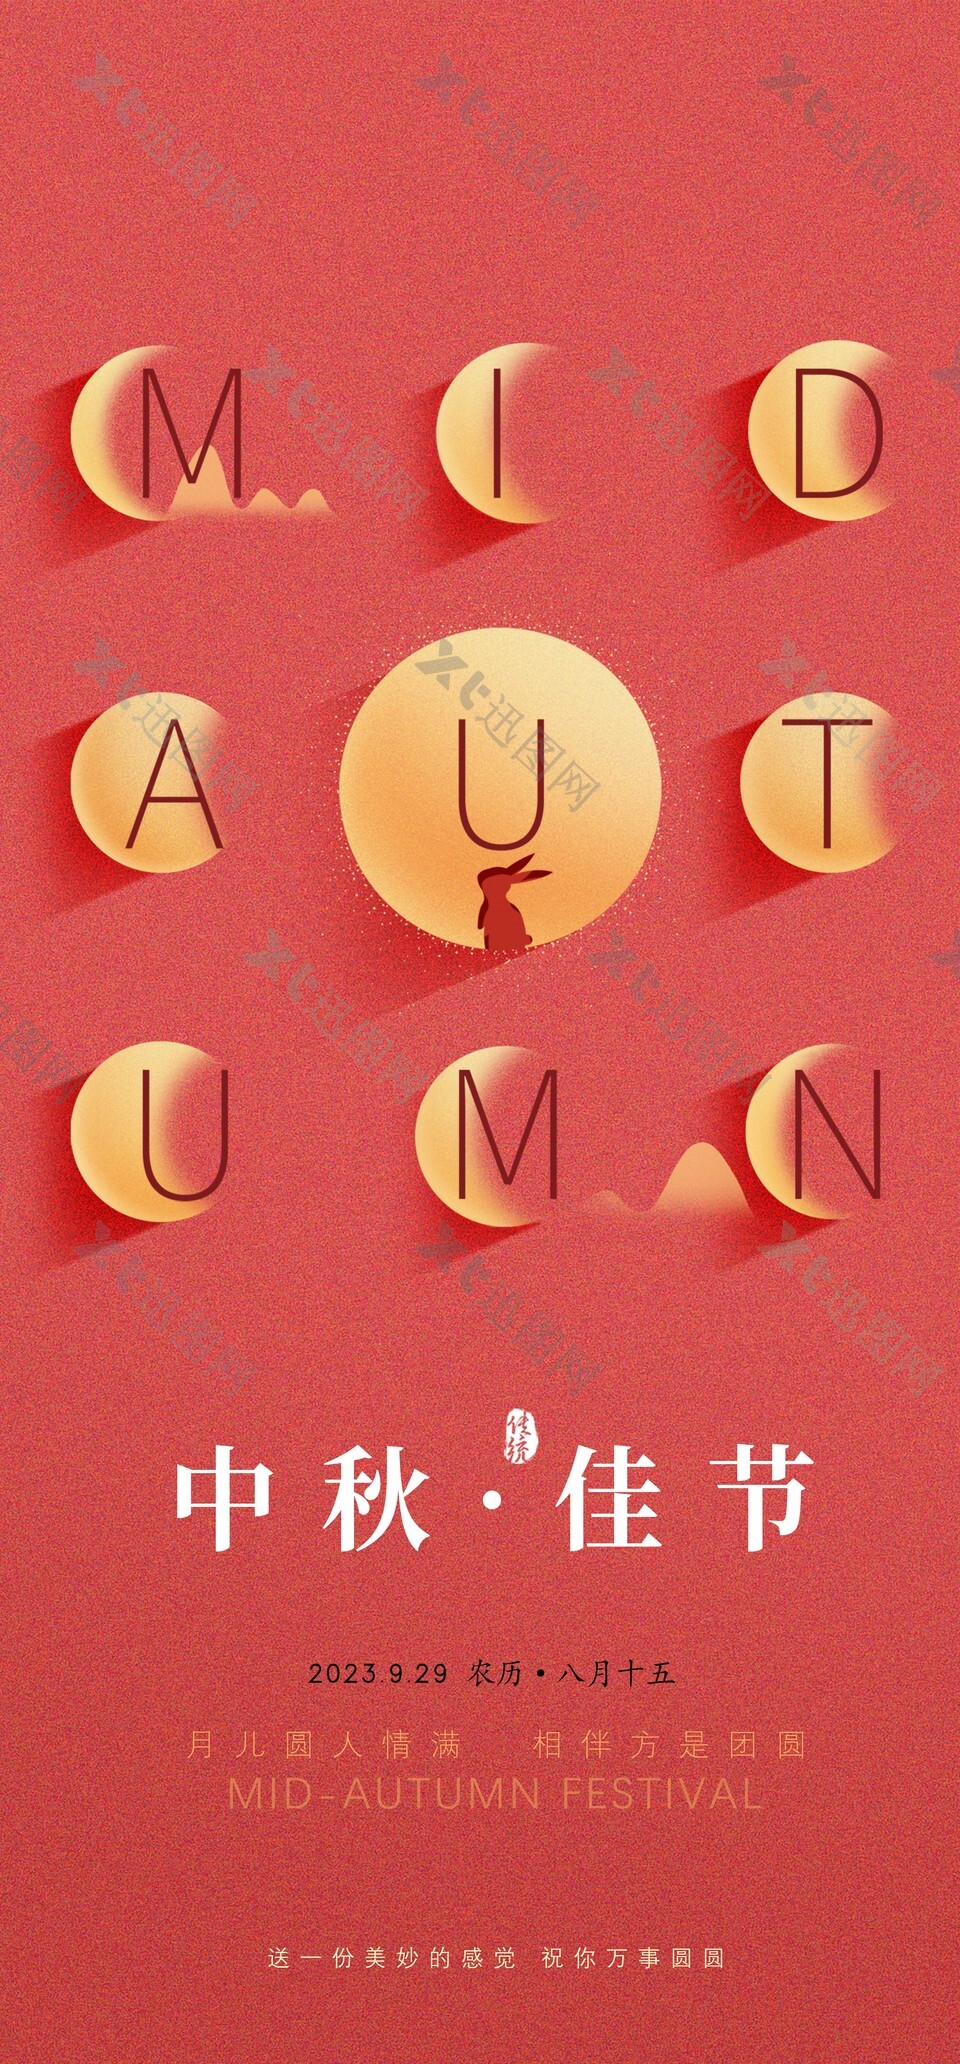 创意简约中秋佳节节日祝福手机海报设计